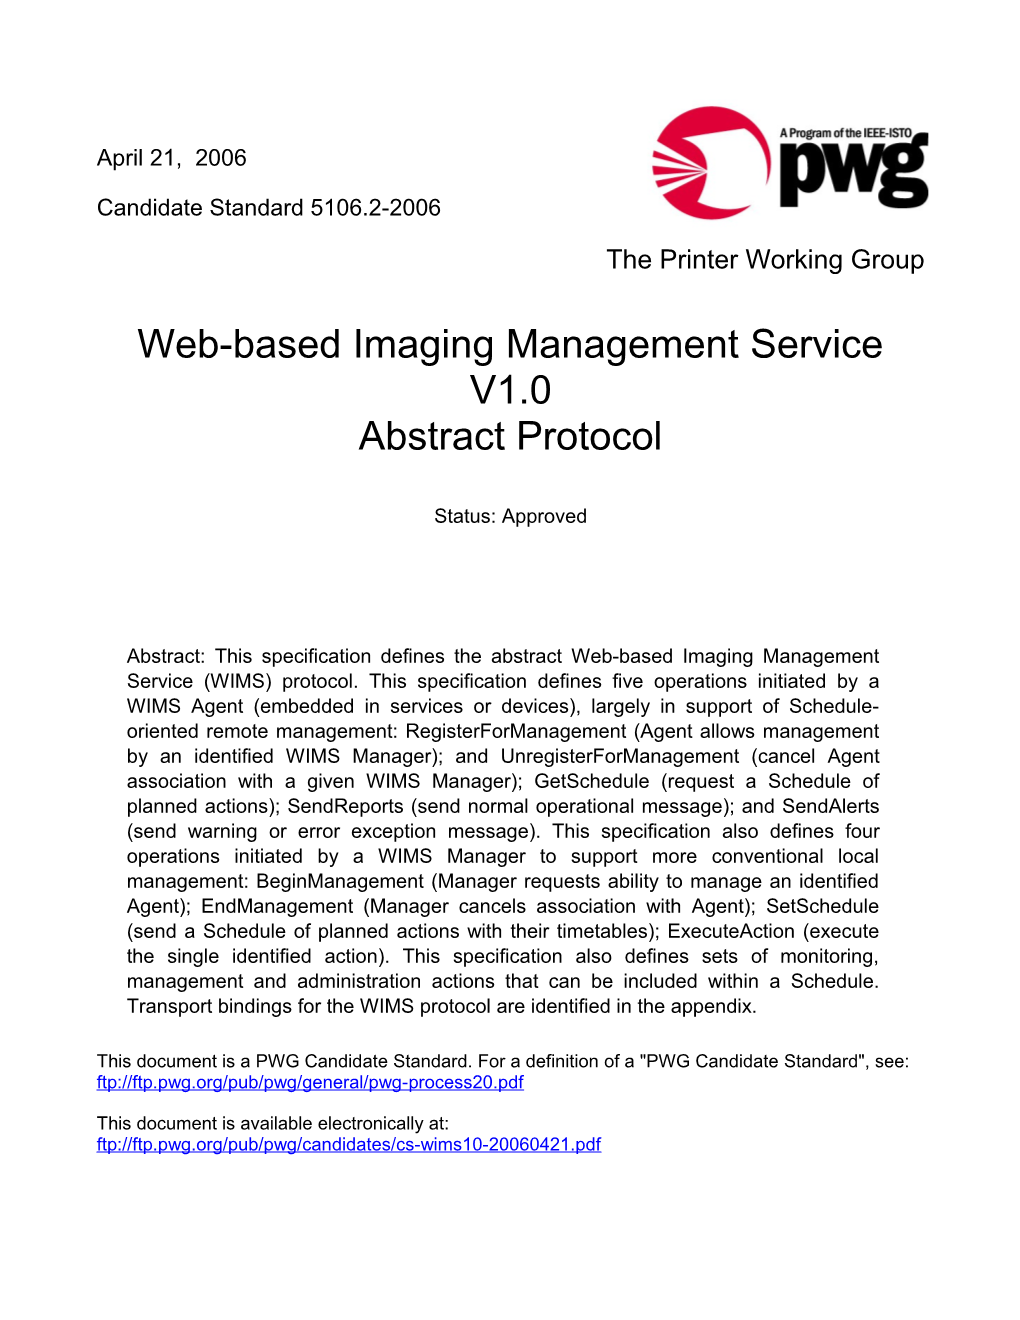 Web-Based Imaging Management Service